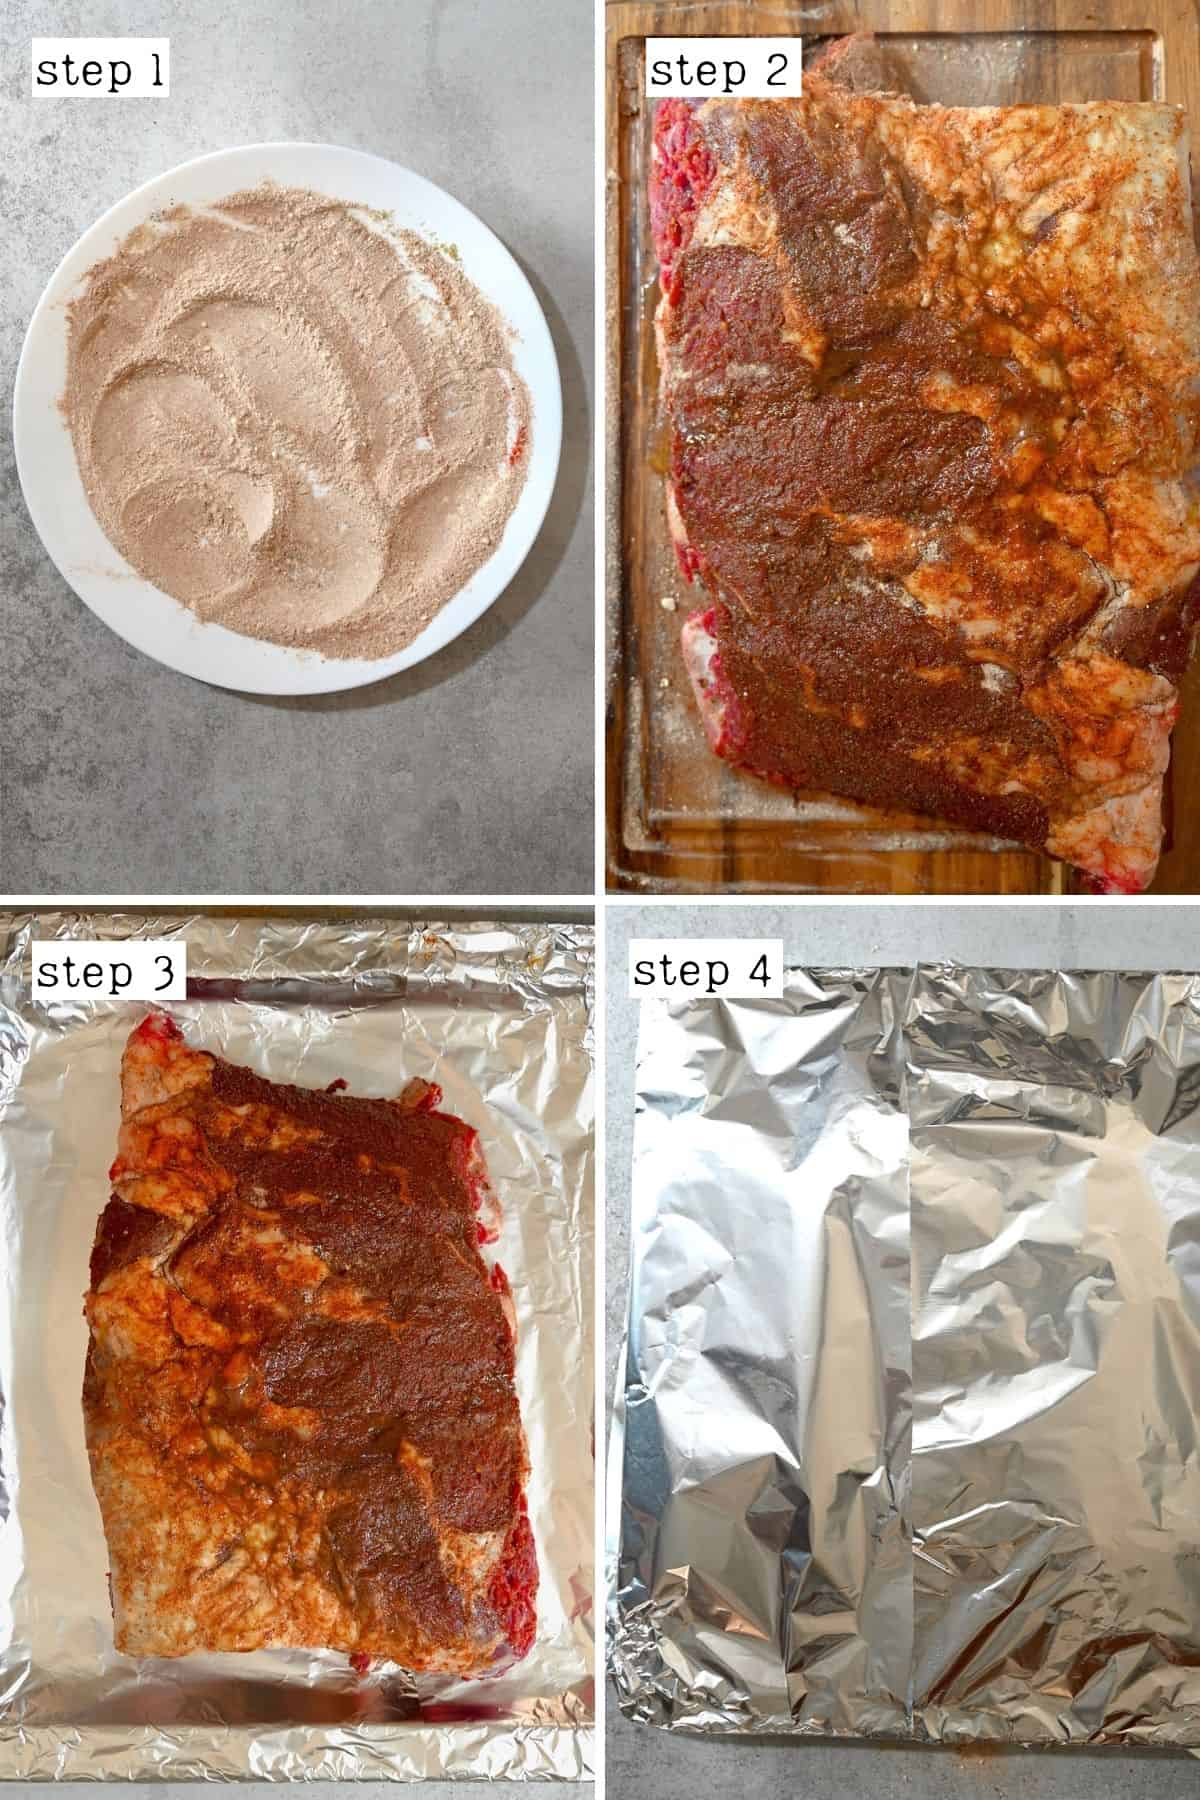 Steps for preparing short ribs for baking